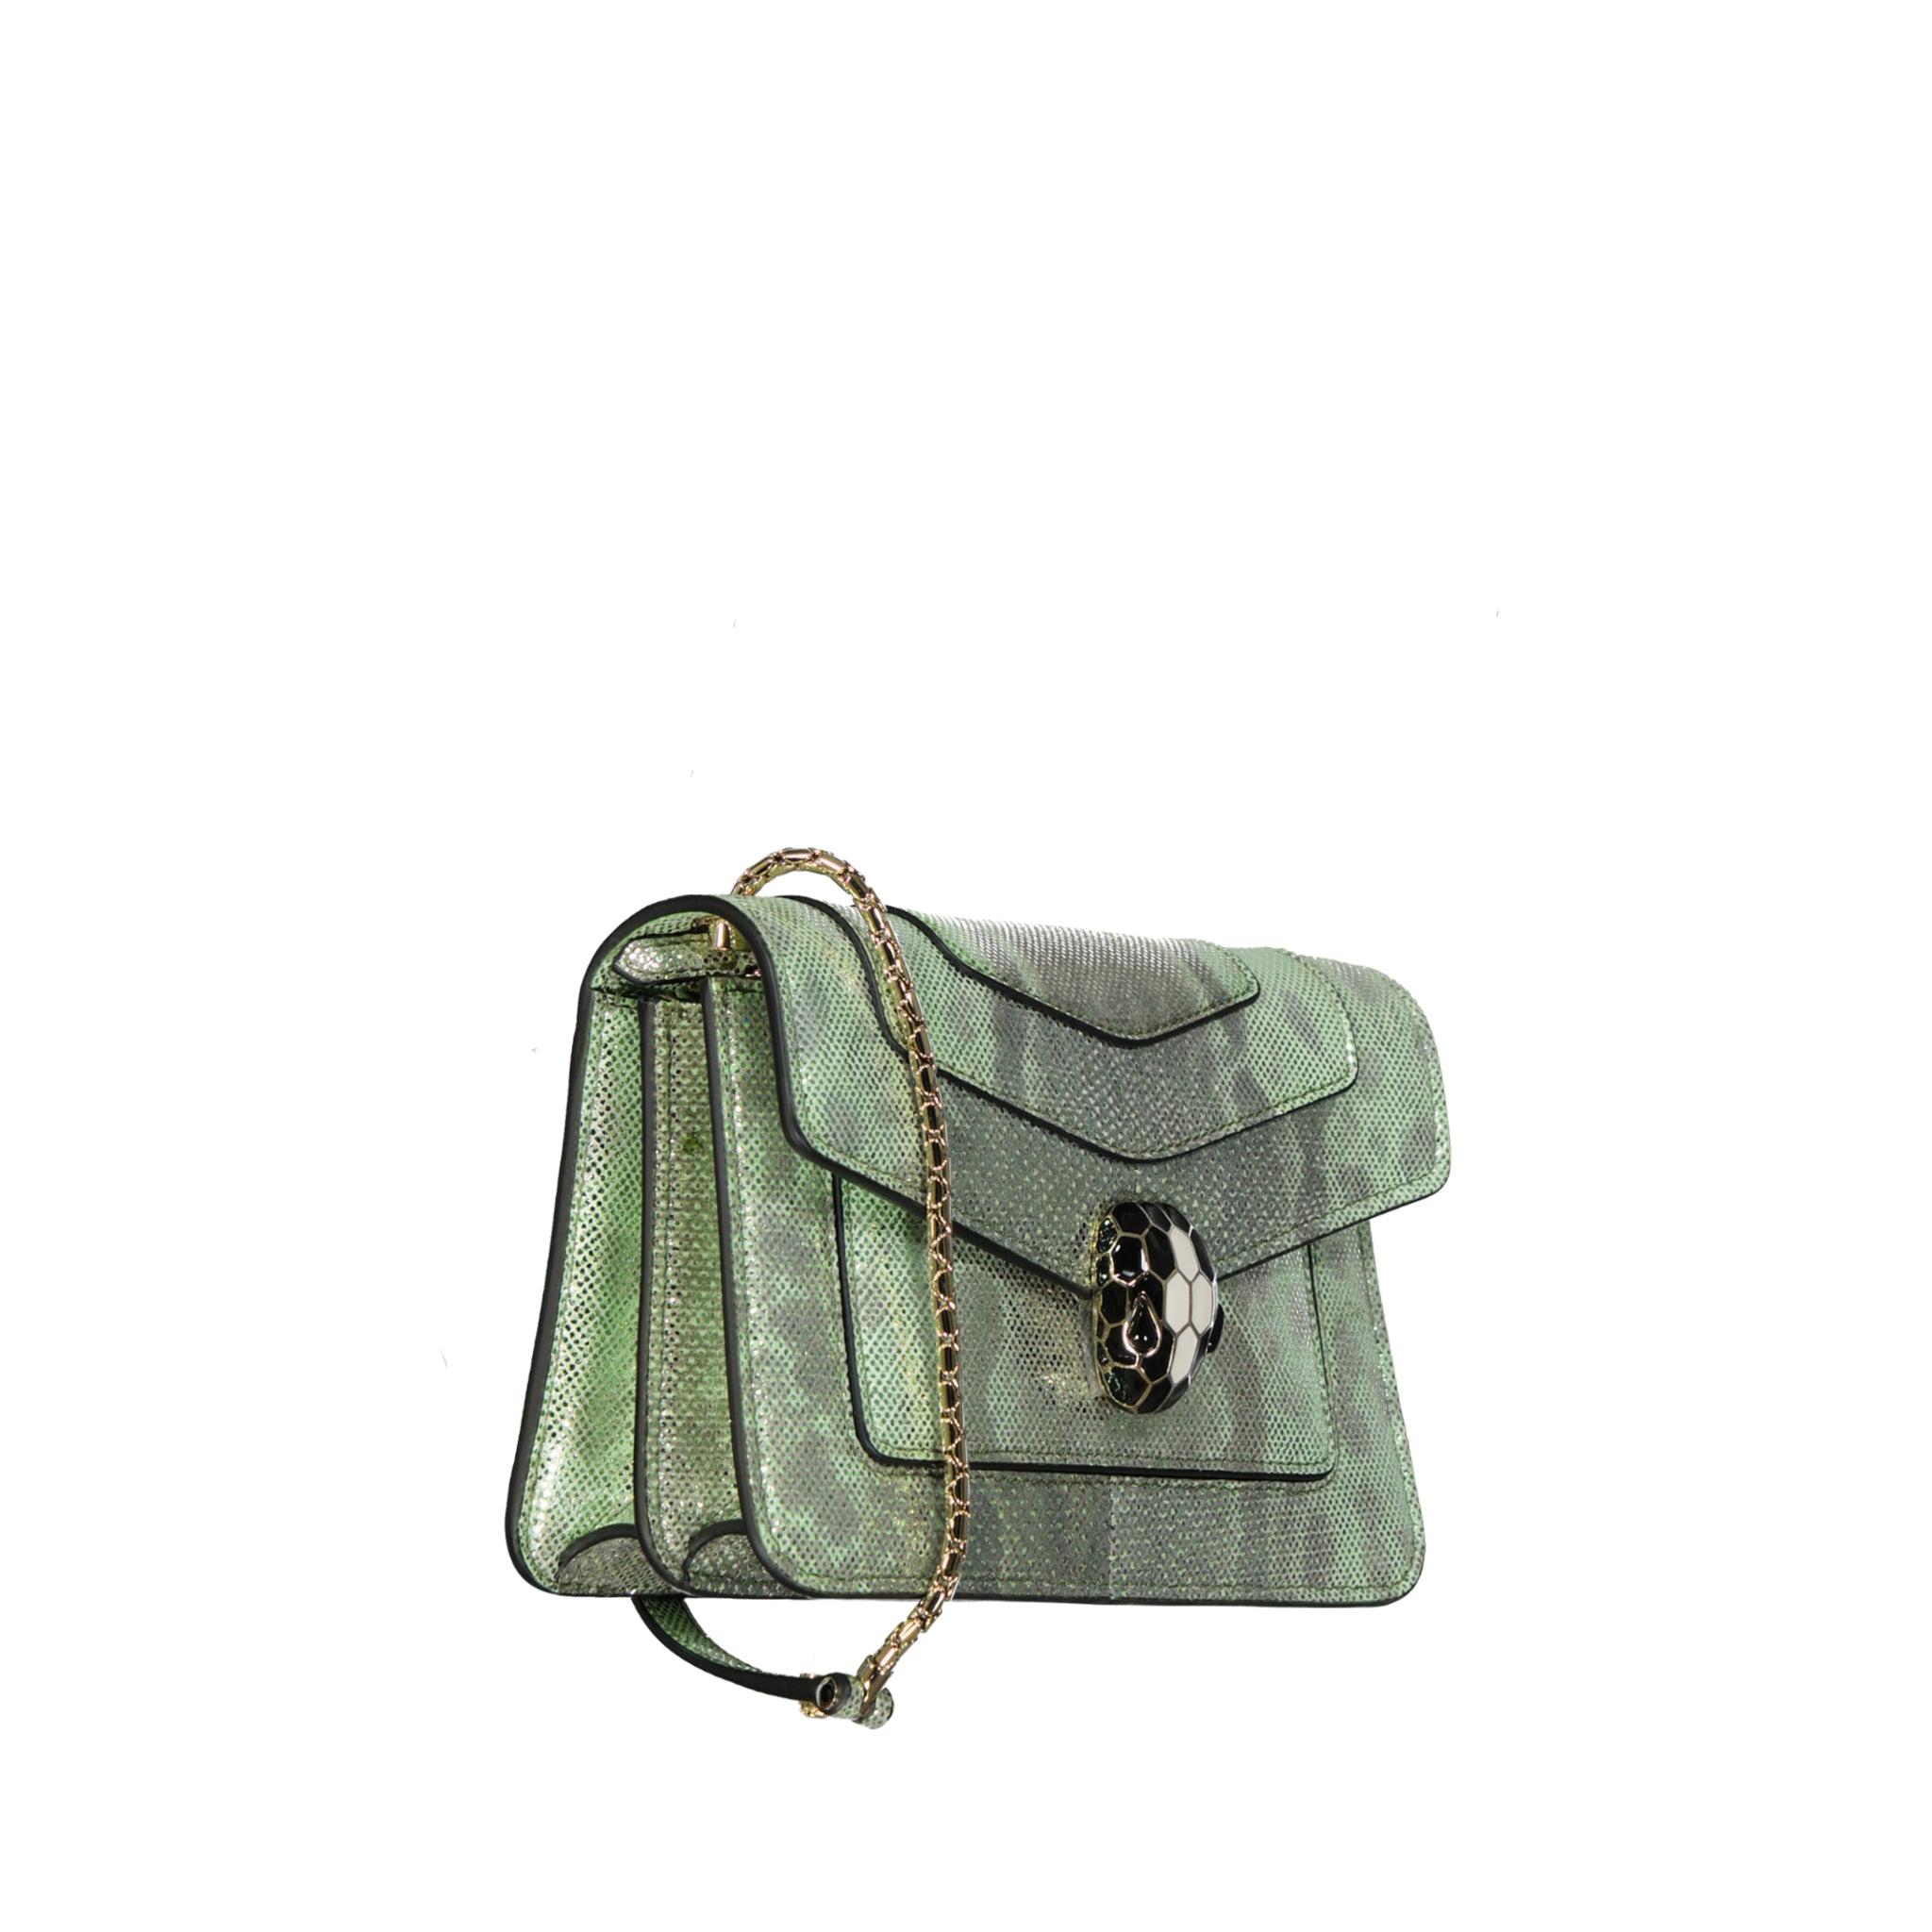 BVLGARI Serpenti Forever Mini Bag in Green